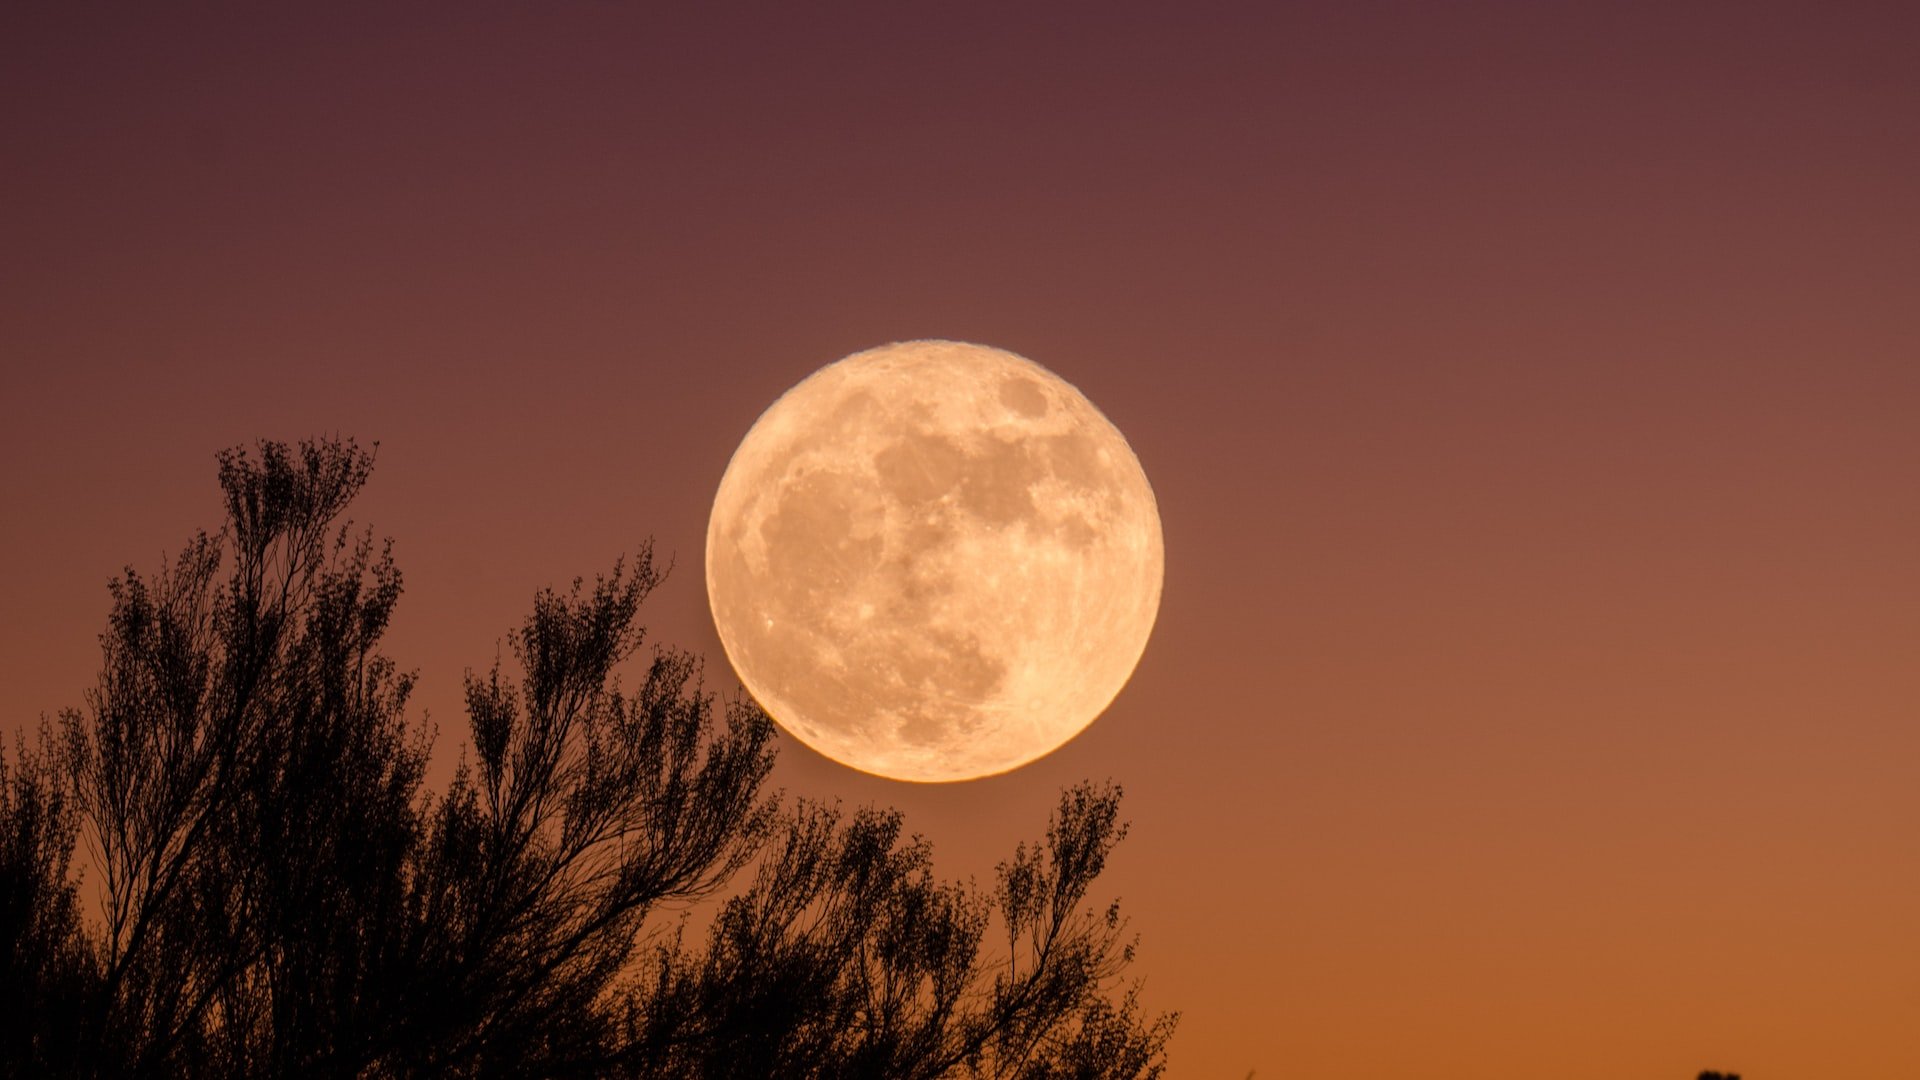 Lua cheia em destaque no céu. Há uma árvore parcialmente mostrada no canto esquerdo da imagem.